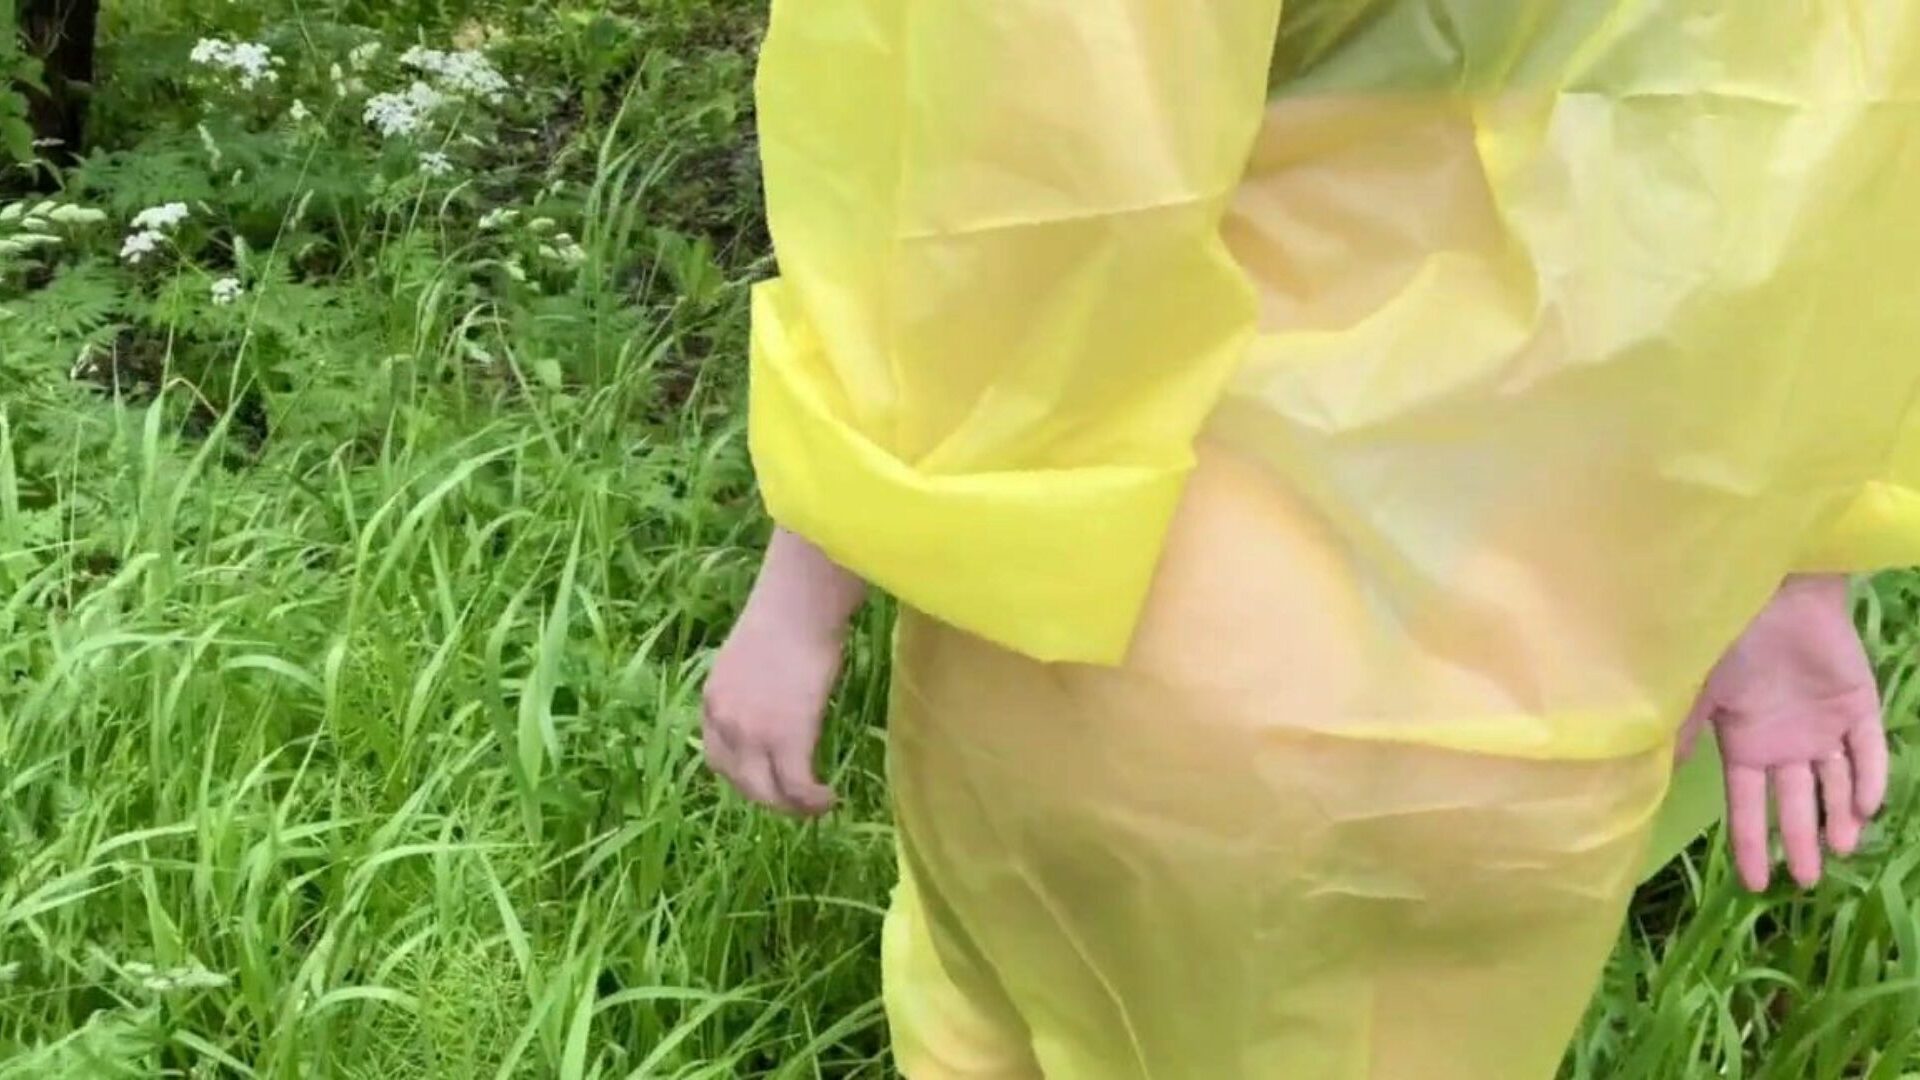 فتاة في معطف واق من المطر تحصل مارس الجنس في الغابة بعد المطر